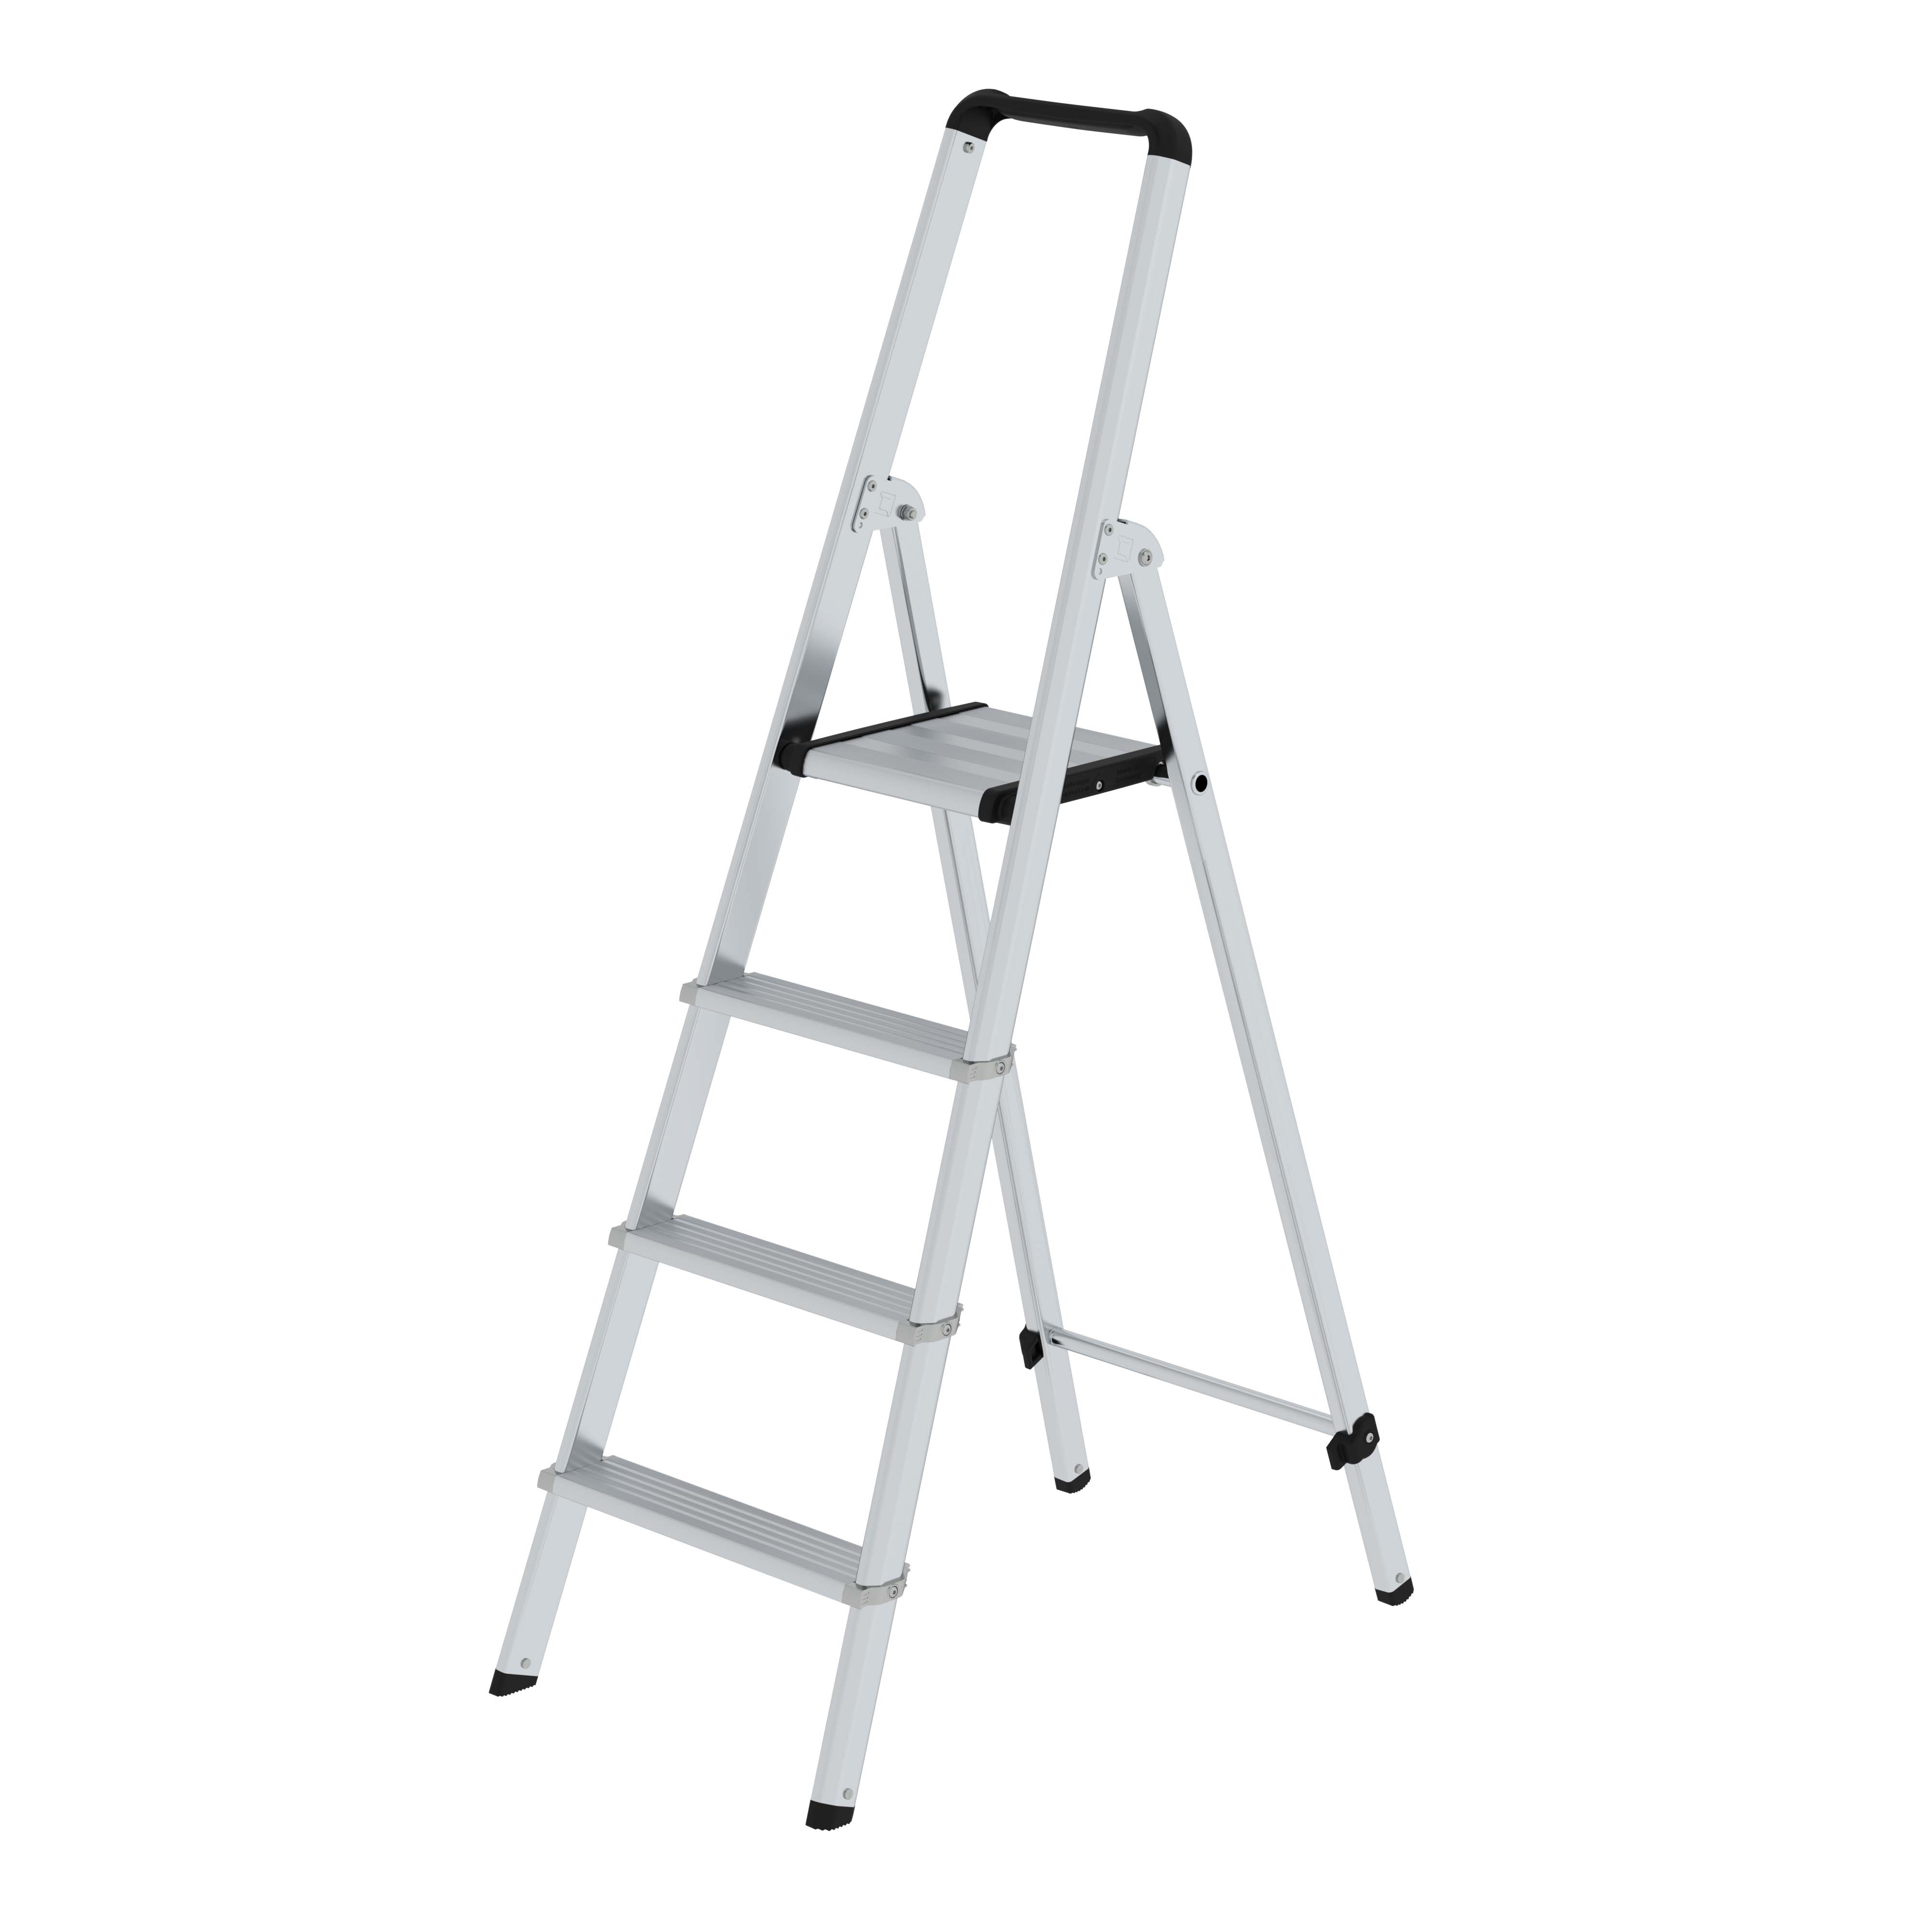 ML Stufen-Stehleiter einseitig begehbar, 4 Stufen - Leiter aus Aluminium, ergonomisch geformte Leiterholme, 80 mm tiefe, geriffelte Stufen, große Plattform, sicherer Stand 